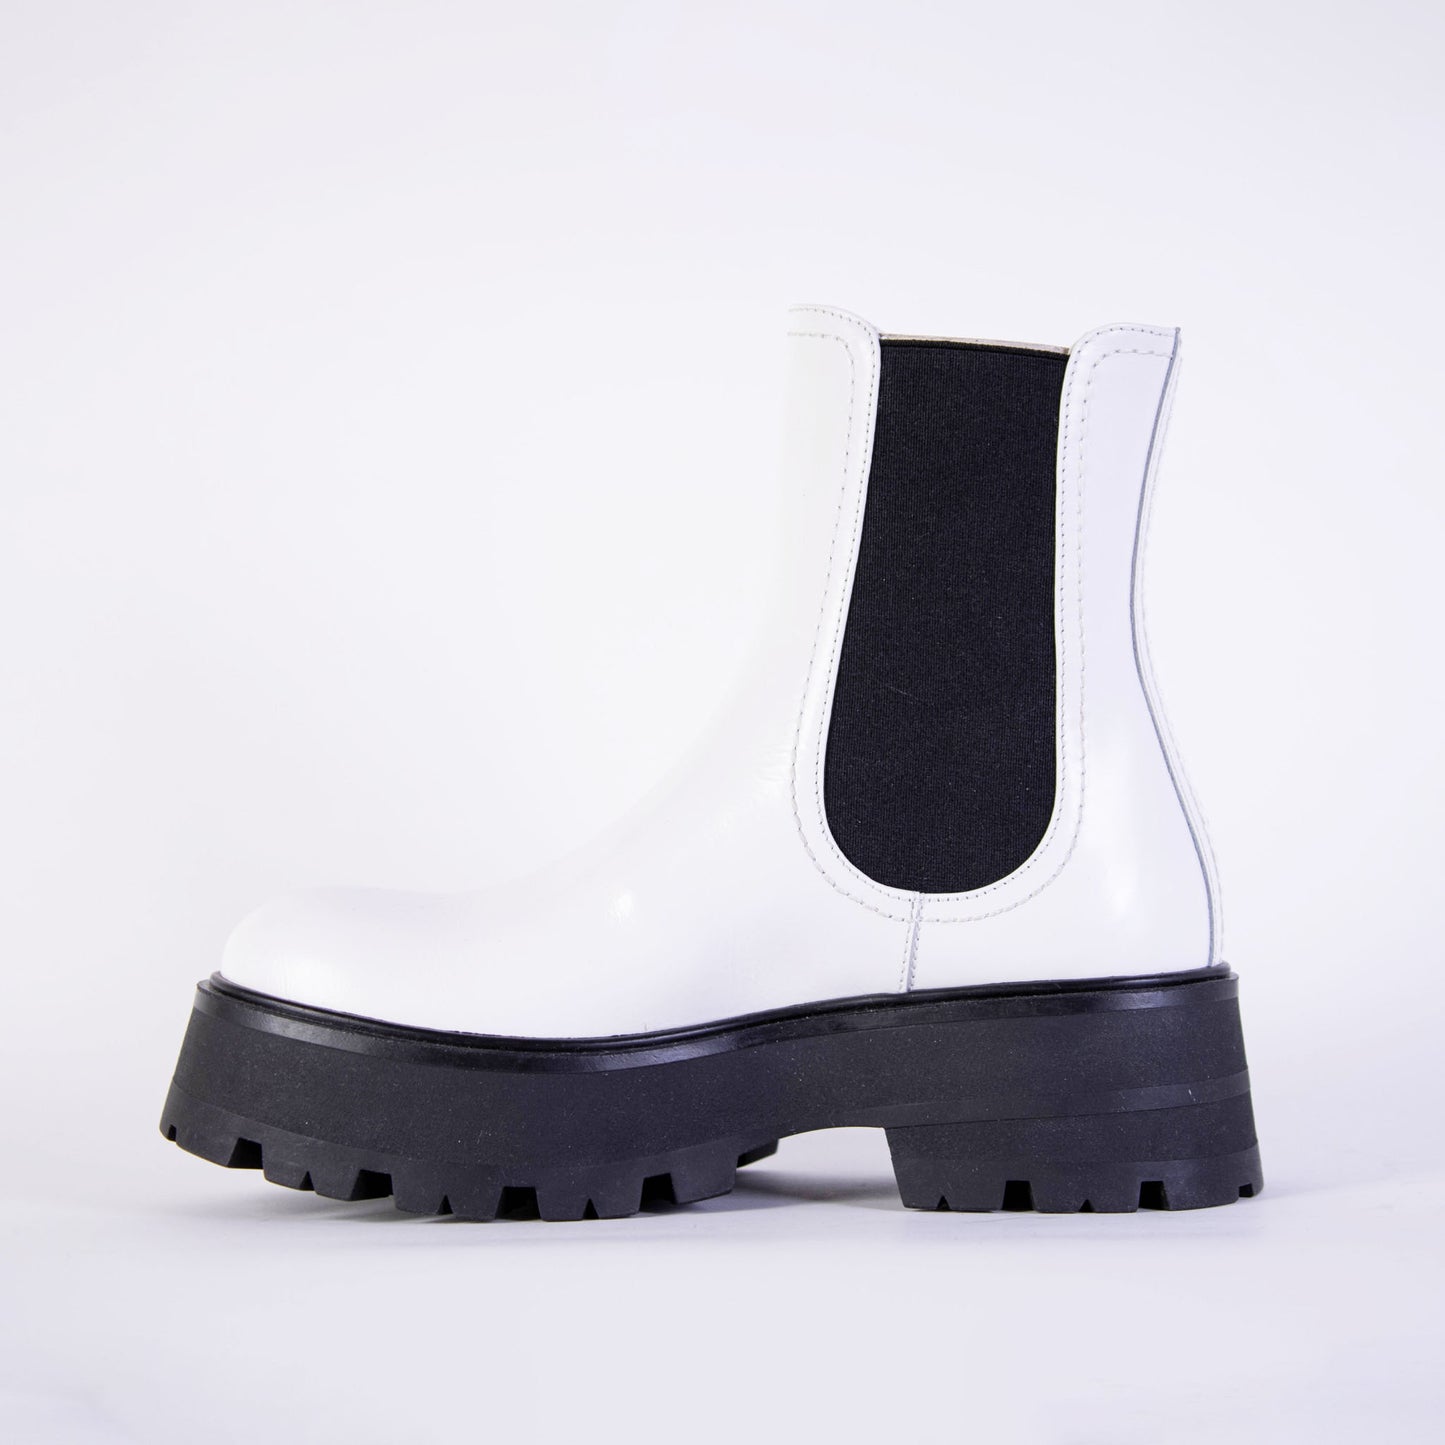 Alexander McQueen White and Black Leather Chelsea Boots - DEA STILOSA MILANO